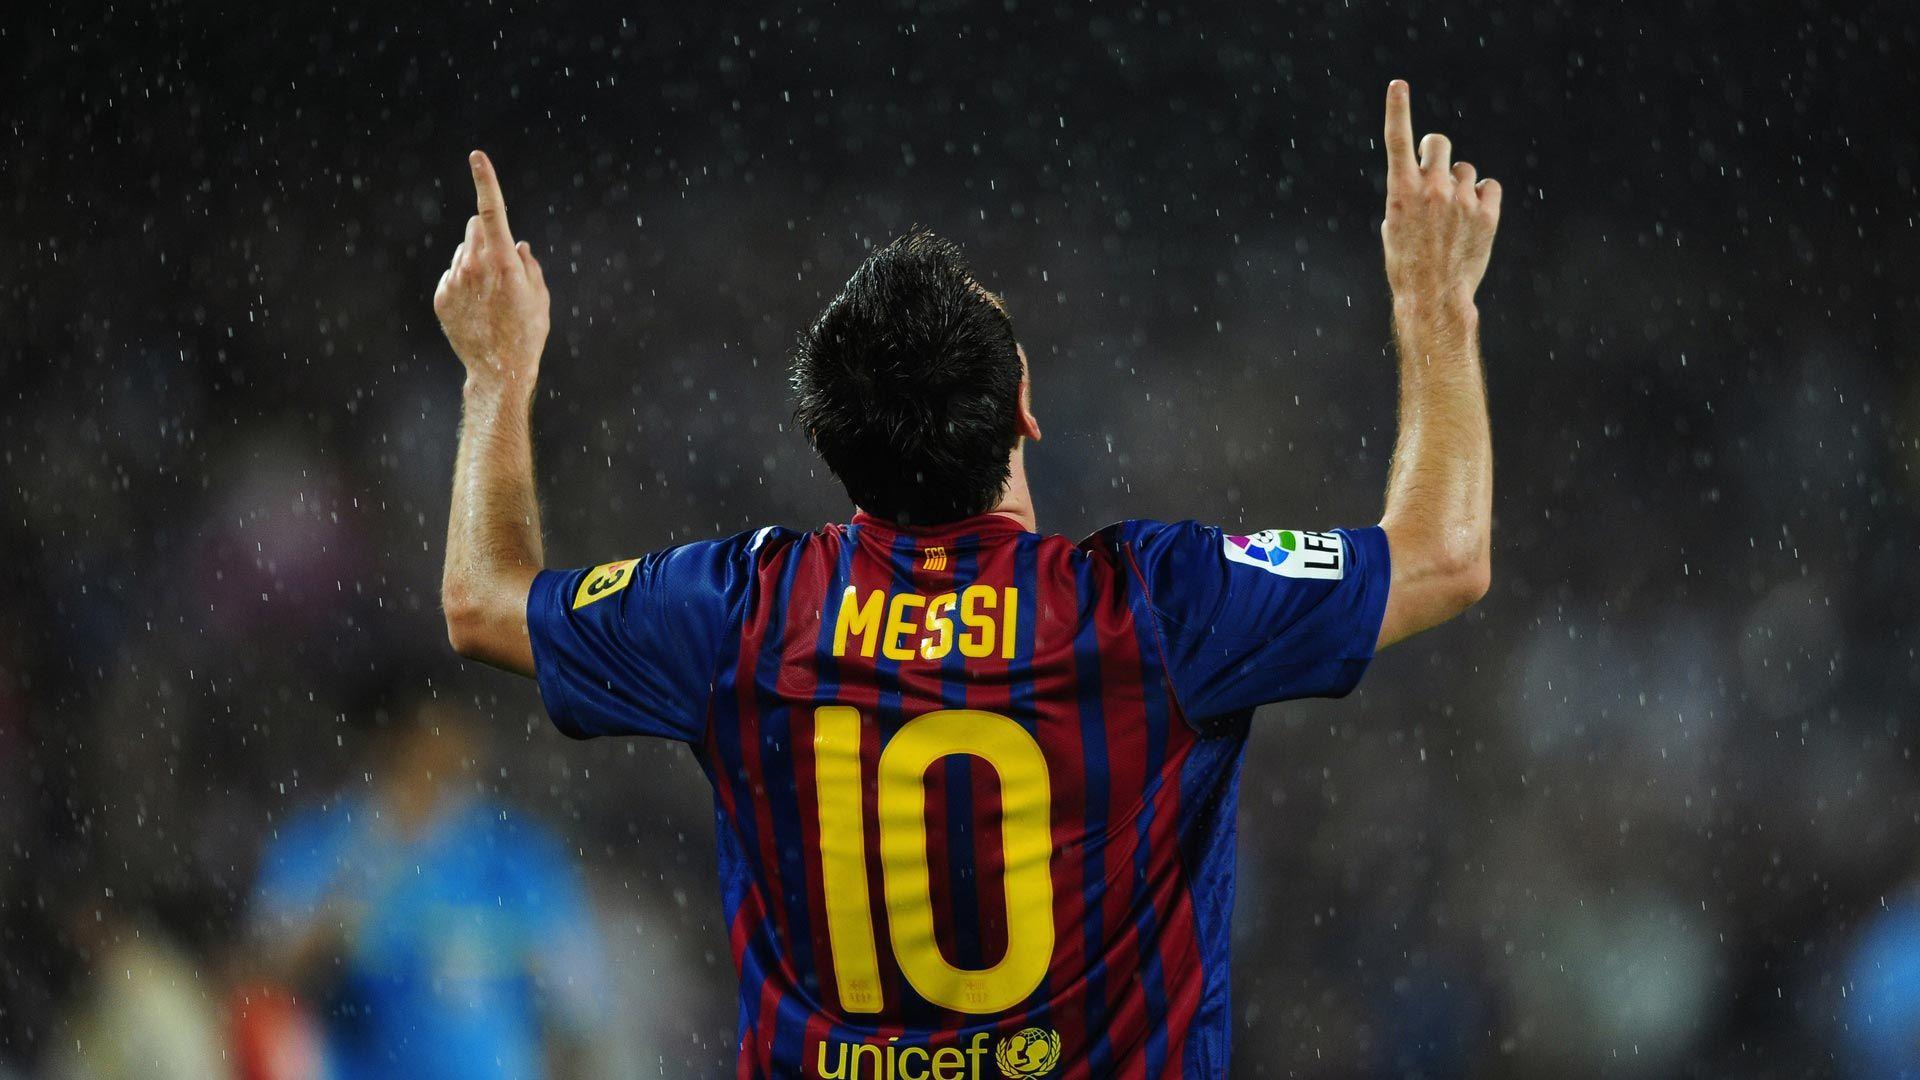 Tạm biệt những bức ảnh nền giản dị và nhàm chán trên máy tính, chào đón sự hiện diện của Lionel Messi vào máy tính của bạn. Với bộ sưu tập ảnh nền của Messi, bạn sẽ được tận hưởng sự nổi bật của anh trên màn hình của mình. Truy cập ngay để cập nhật bộ ảnh nền cho máy tính của bạn.